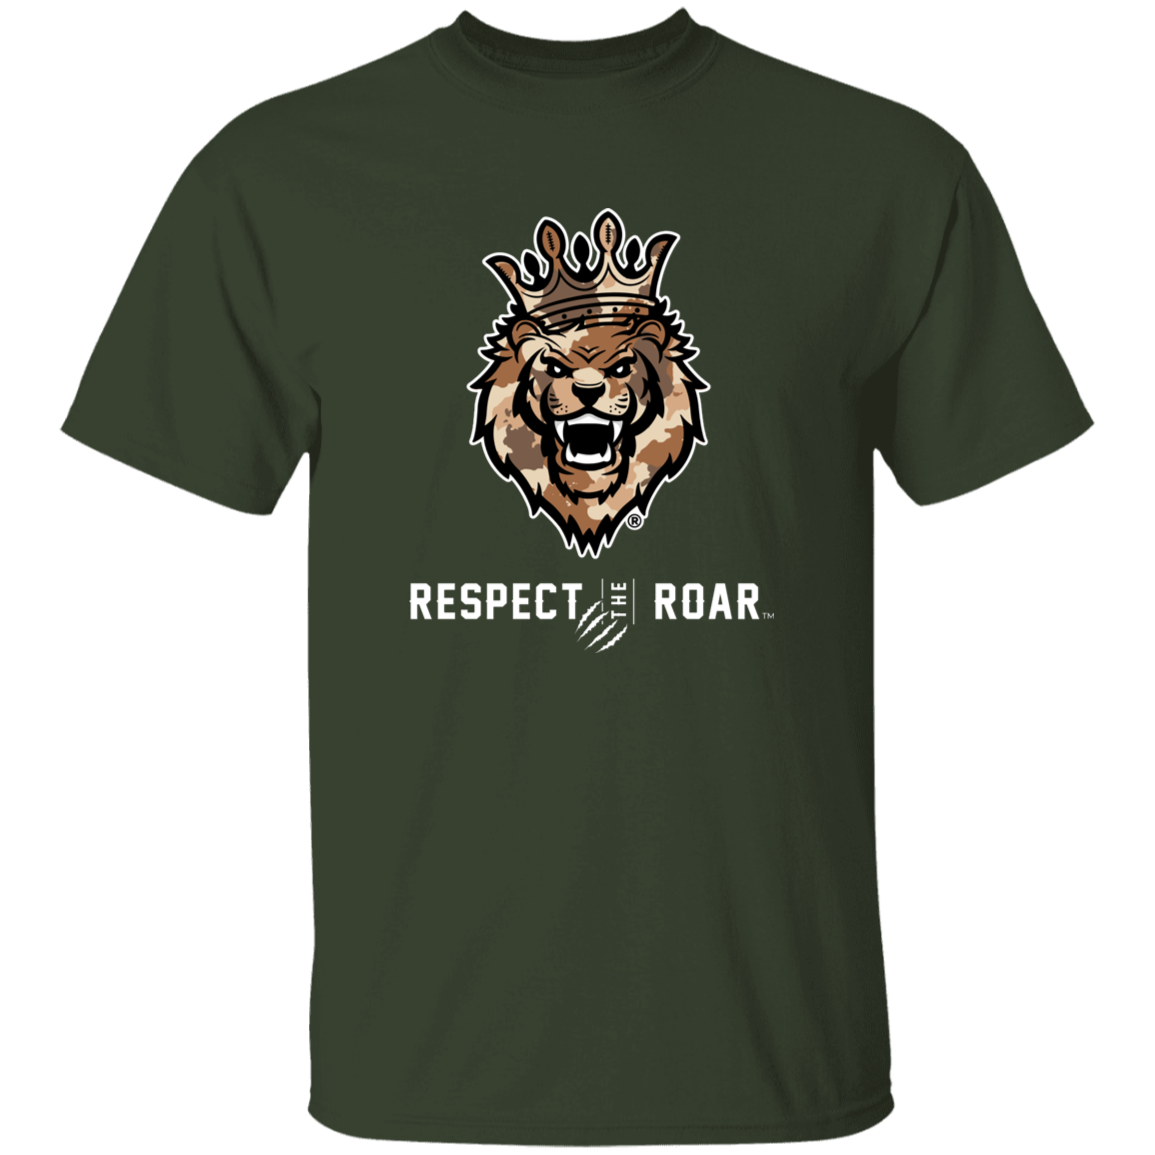 Respect The Roar (Brown) - G500 5.3 oz. T-Shirt